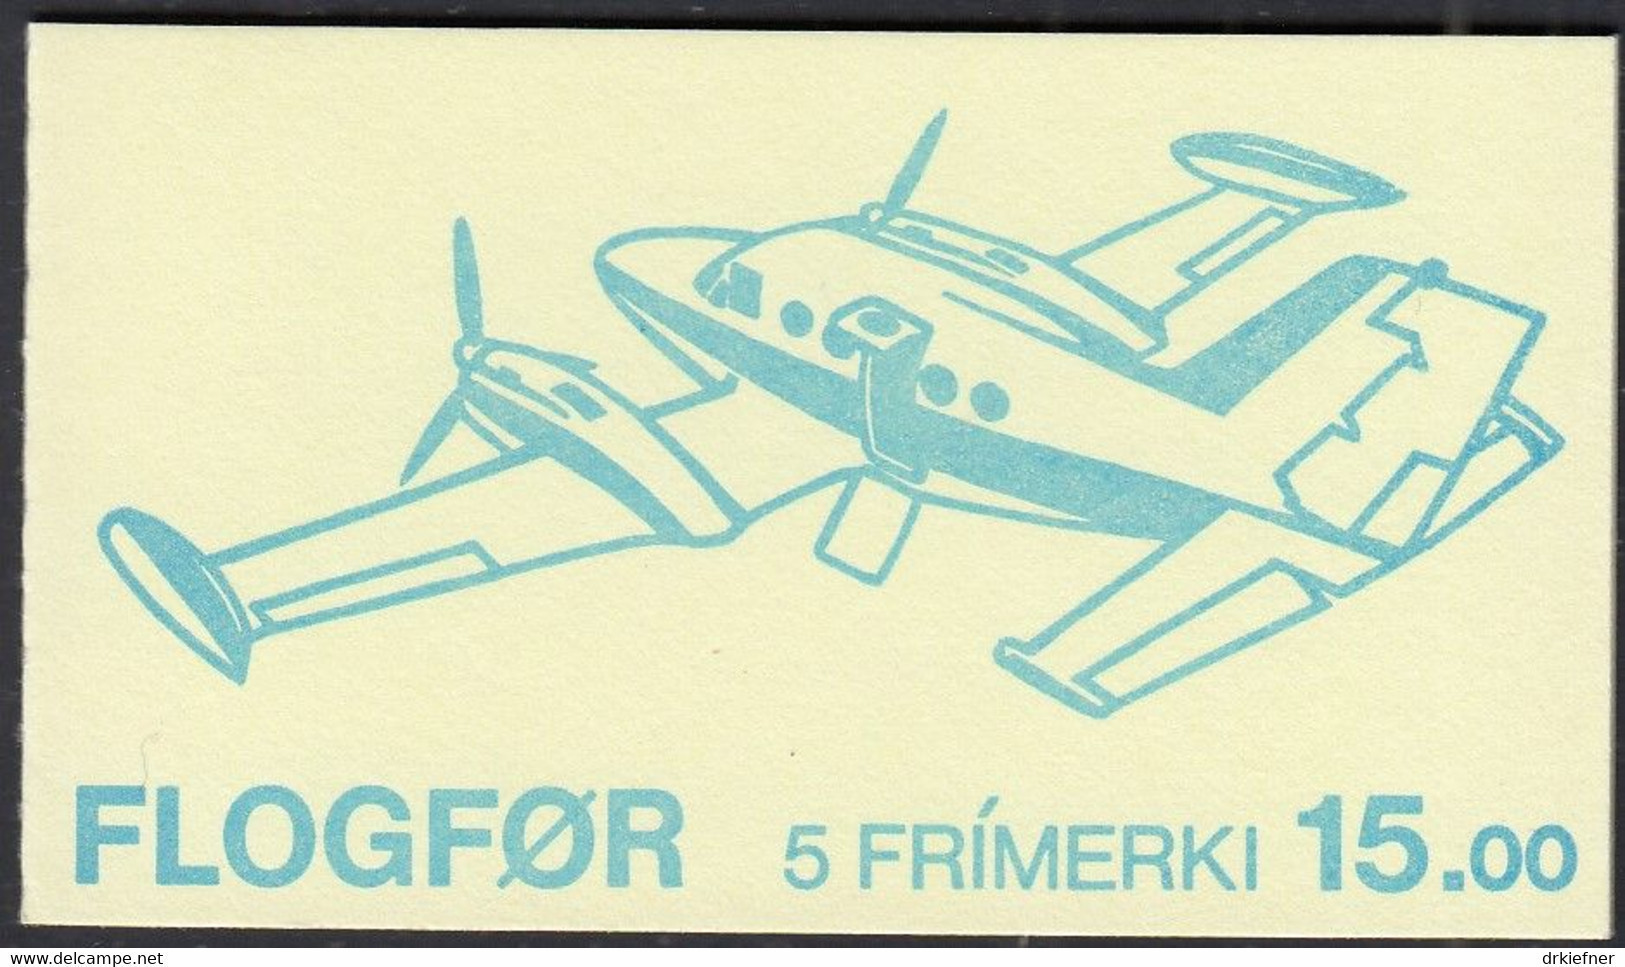 FÄRÖER Markenheftchen MH 3 Mit 125-129, Postfrisch **, Flugzeuge, 1985 - Isole Faroer